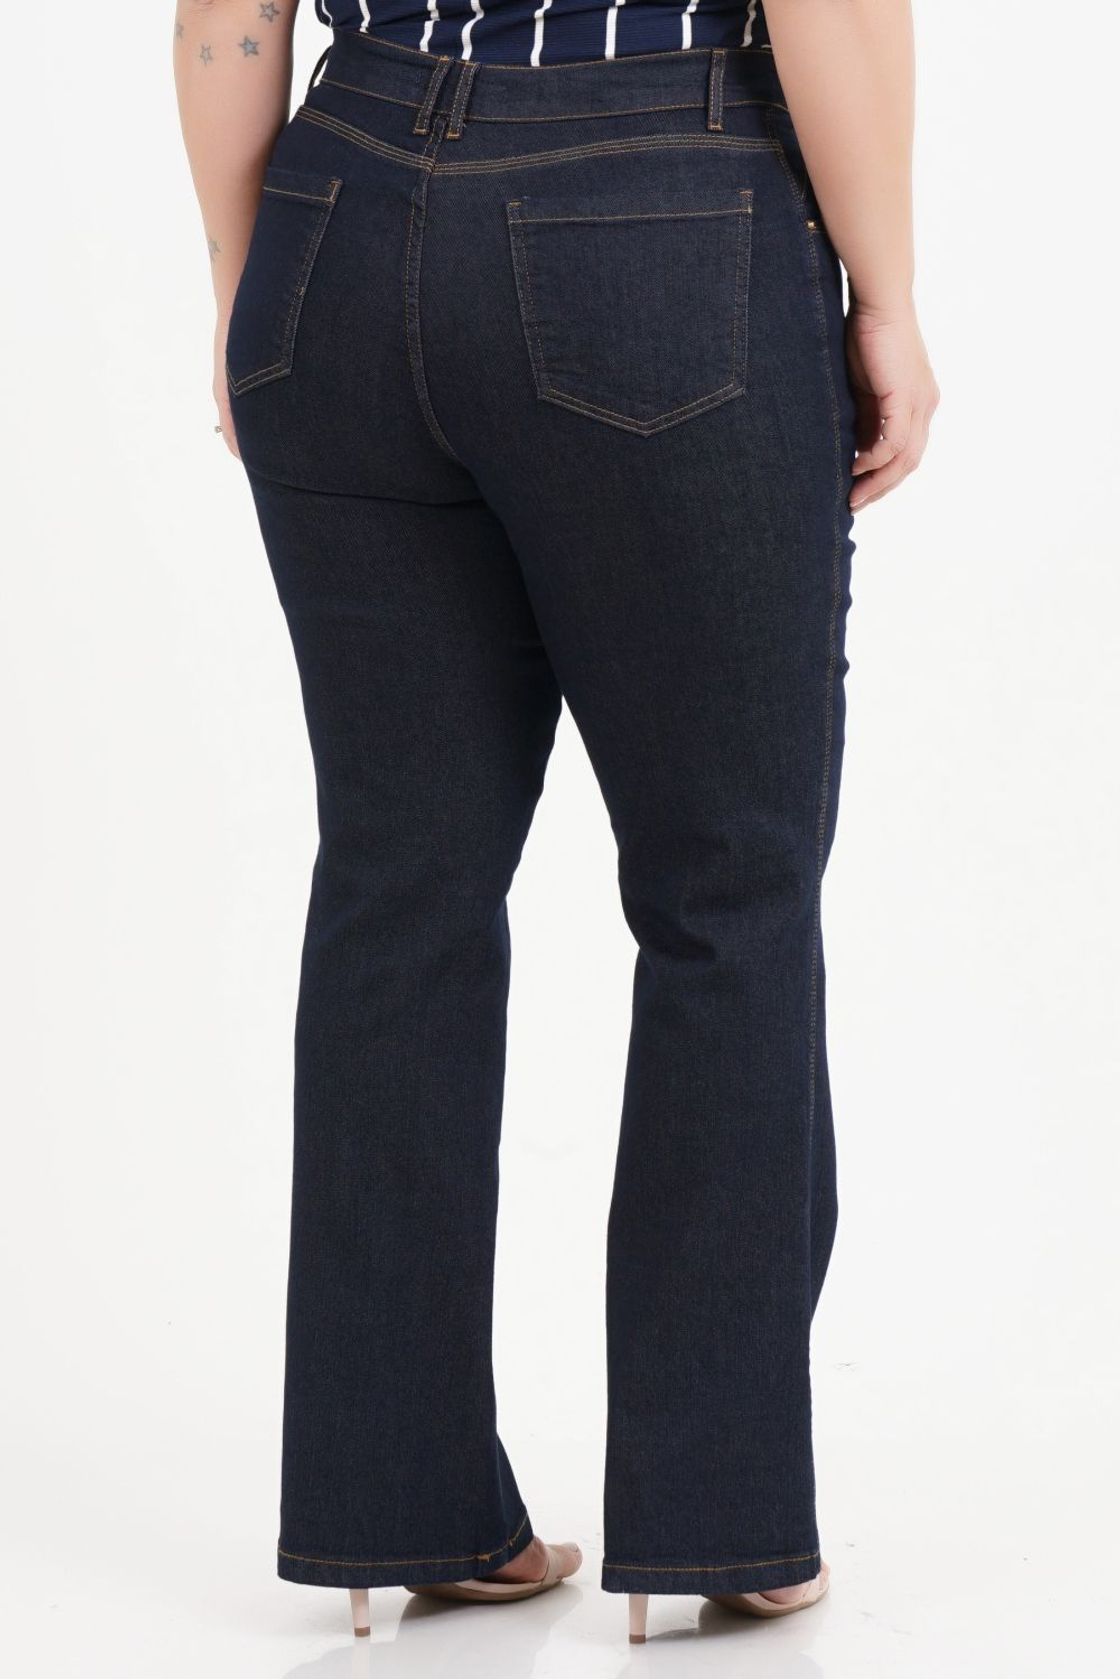 Calça Boot Cut Plus Size Jeans com Fenda Best Size - E-commerce Multimarcas Plus  Size